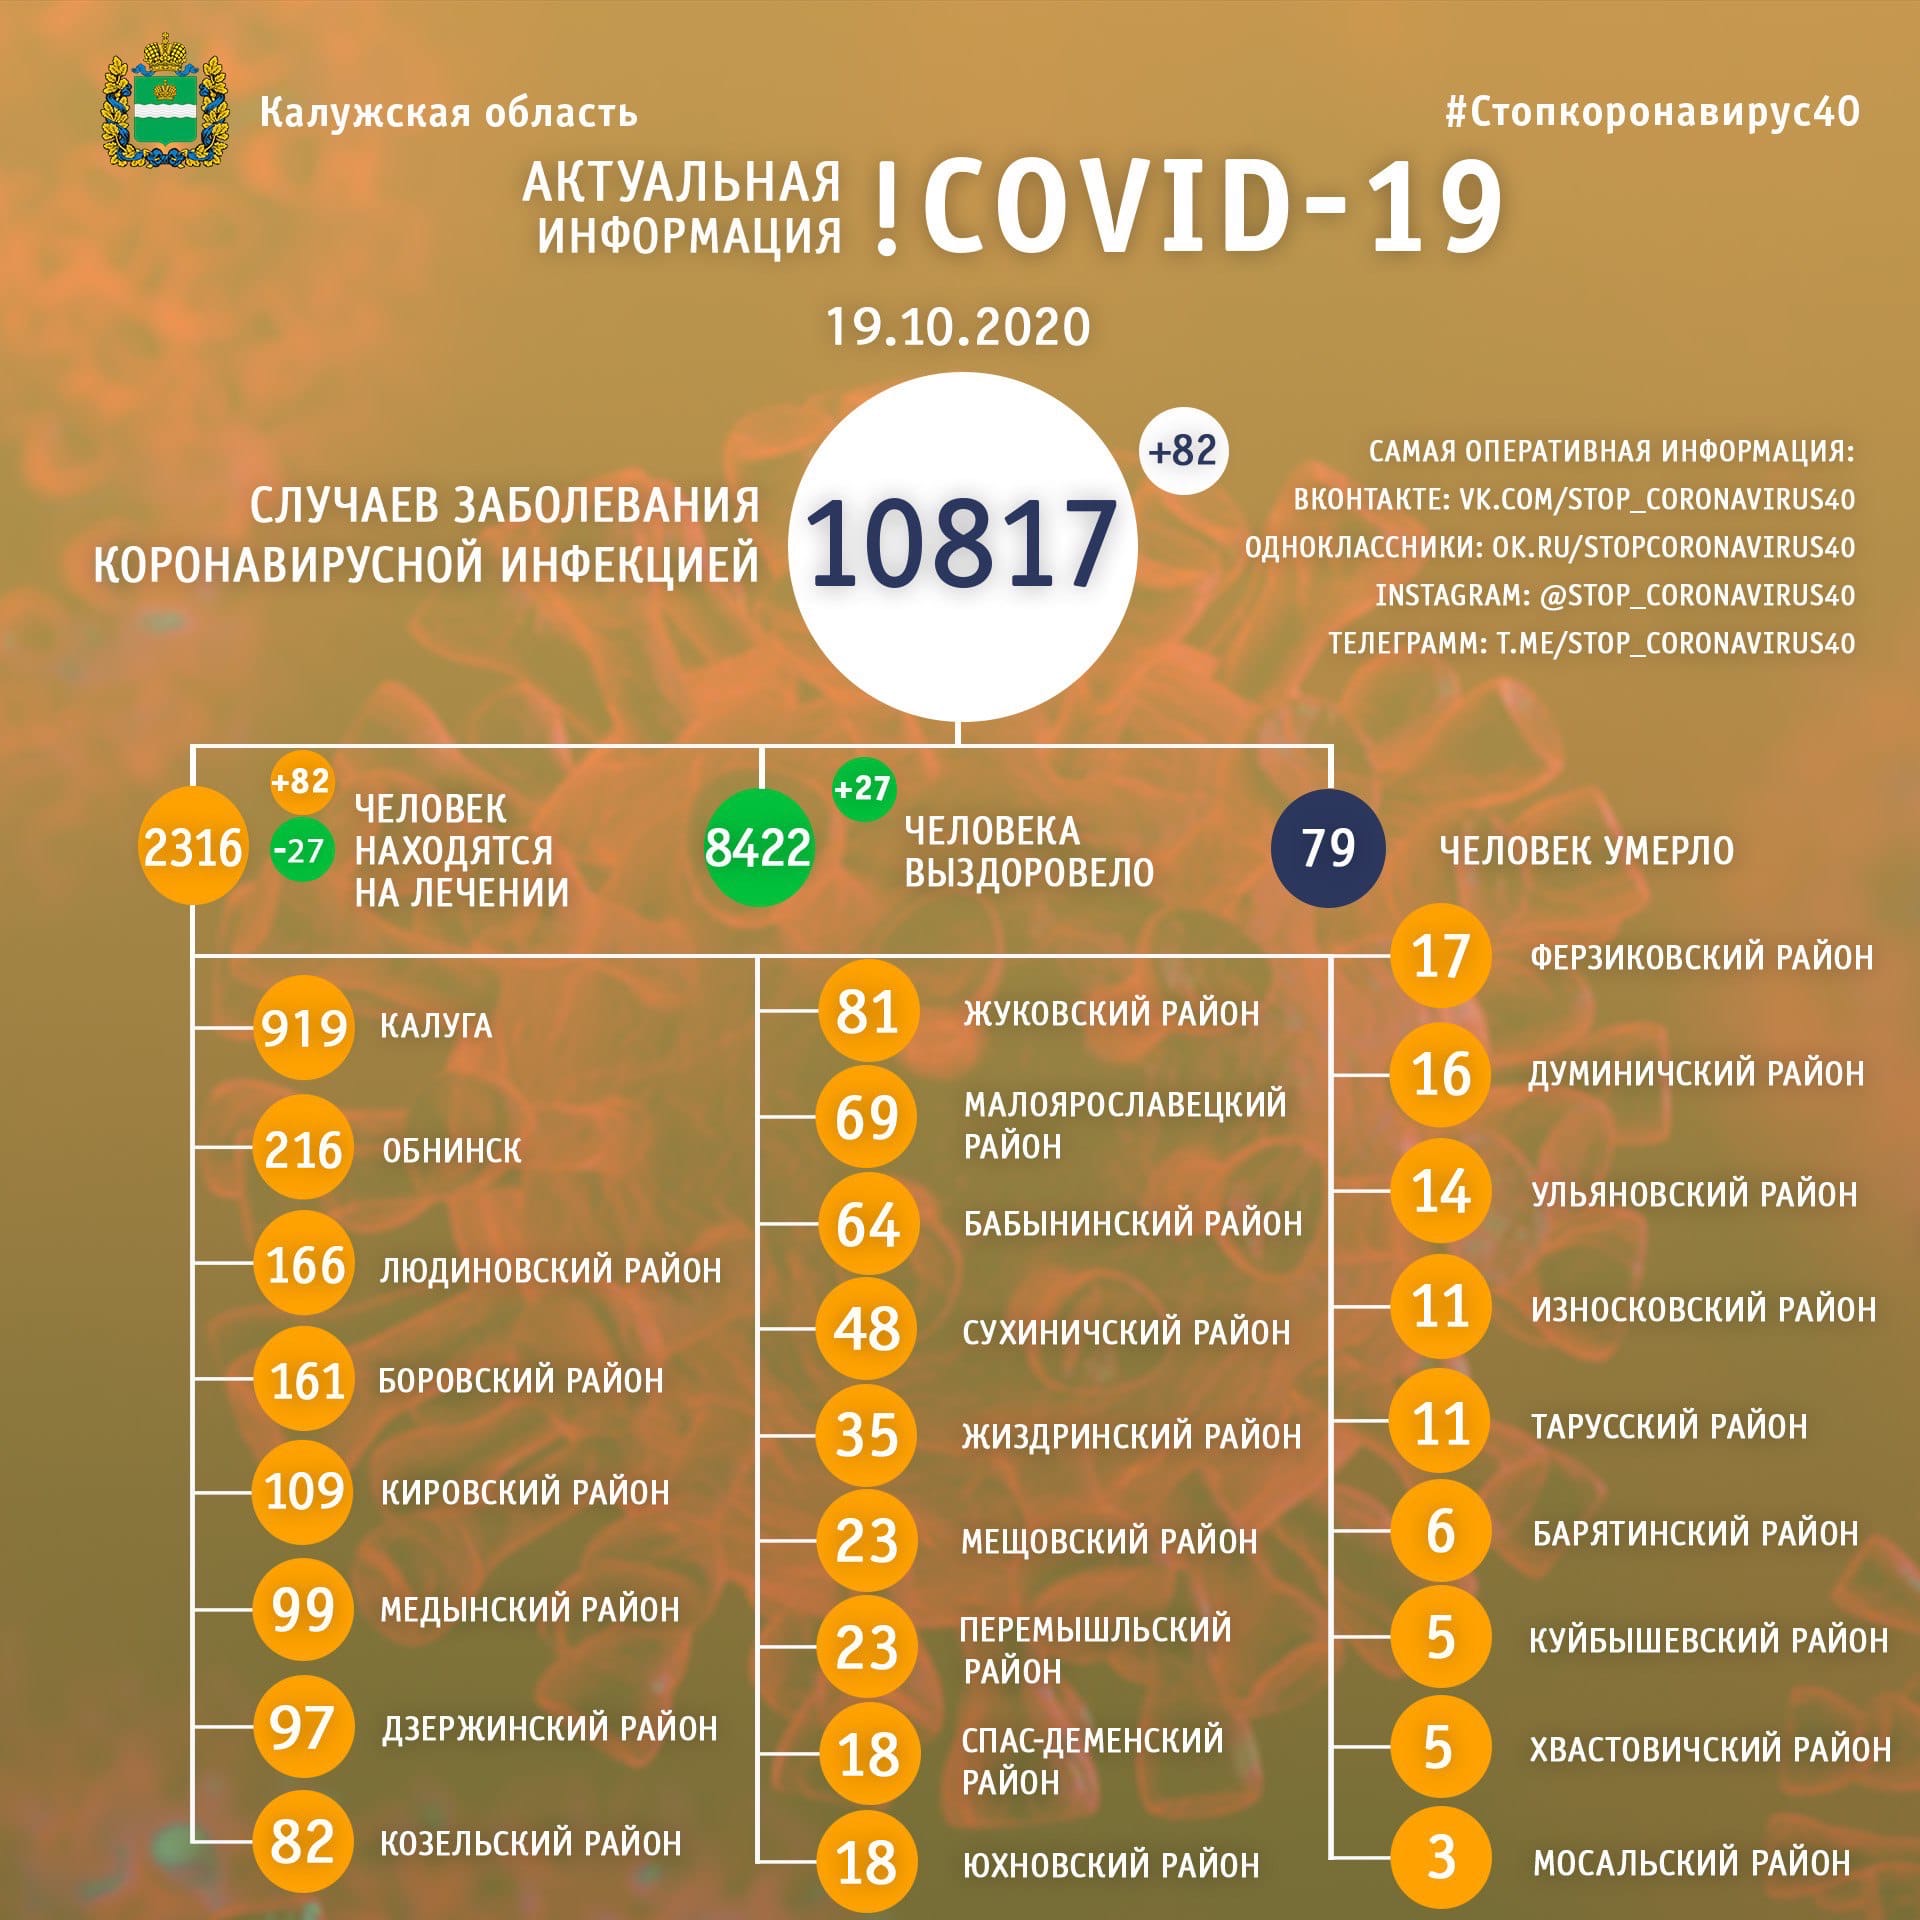 Официальная статистика по коронавирусу в Калужской области на 19 октября 2020 года.